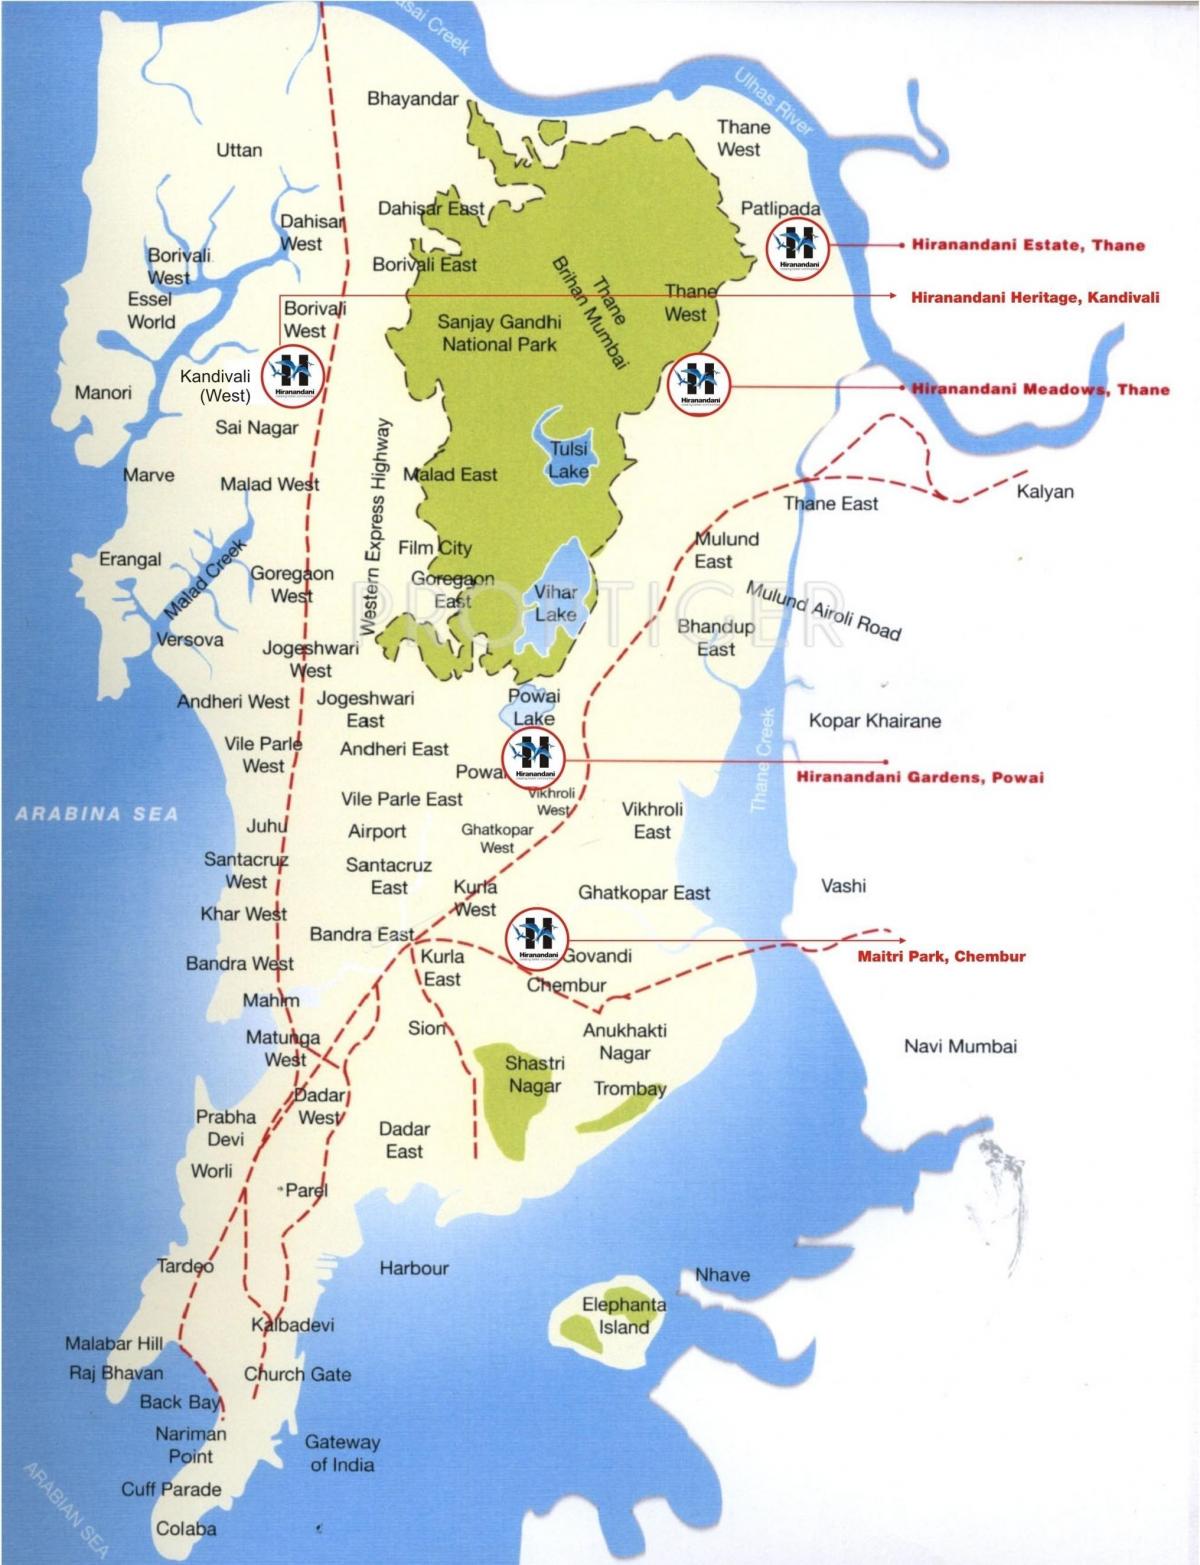 քարտեզ Колаба Մումբայի